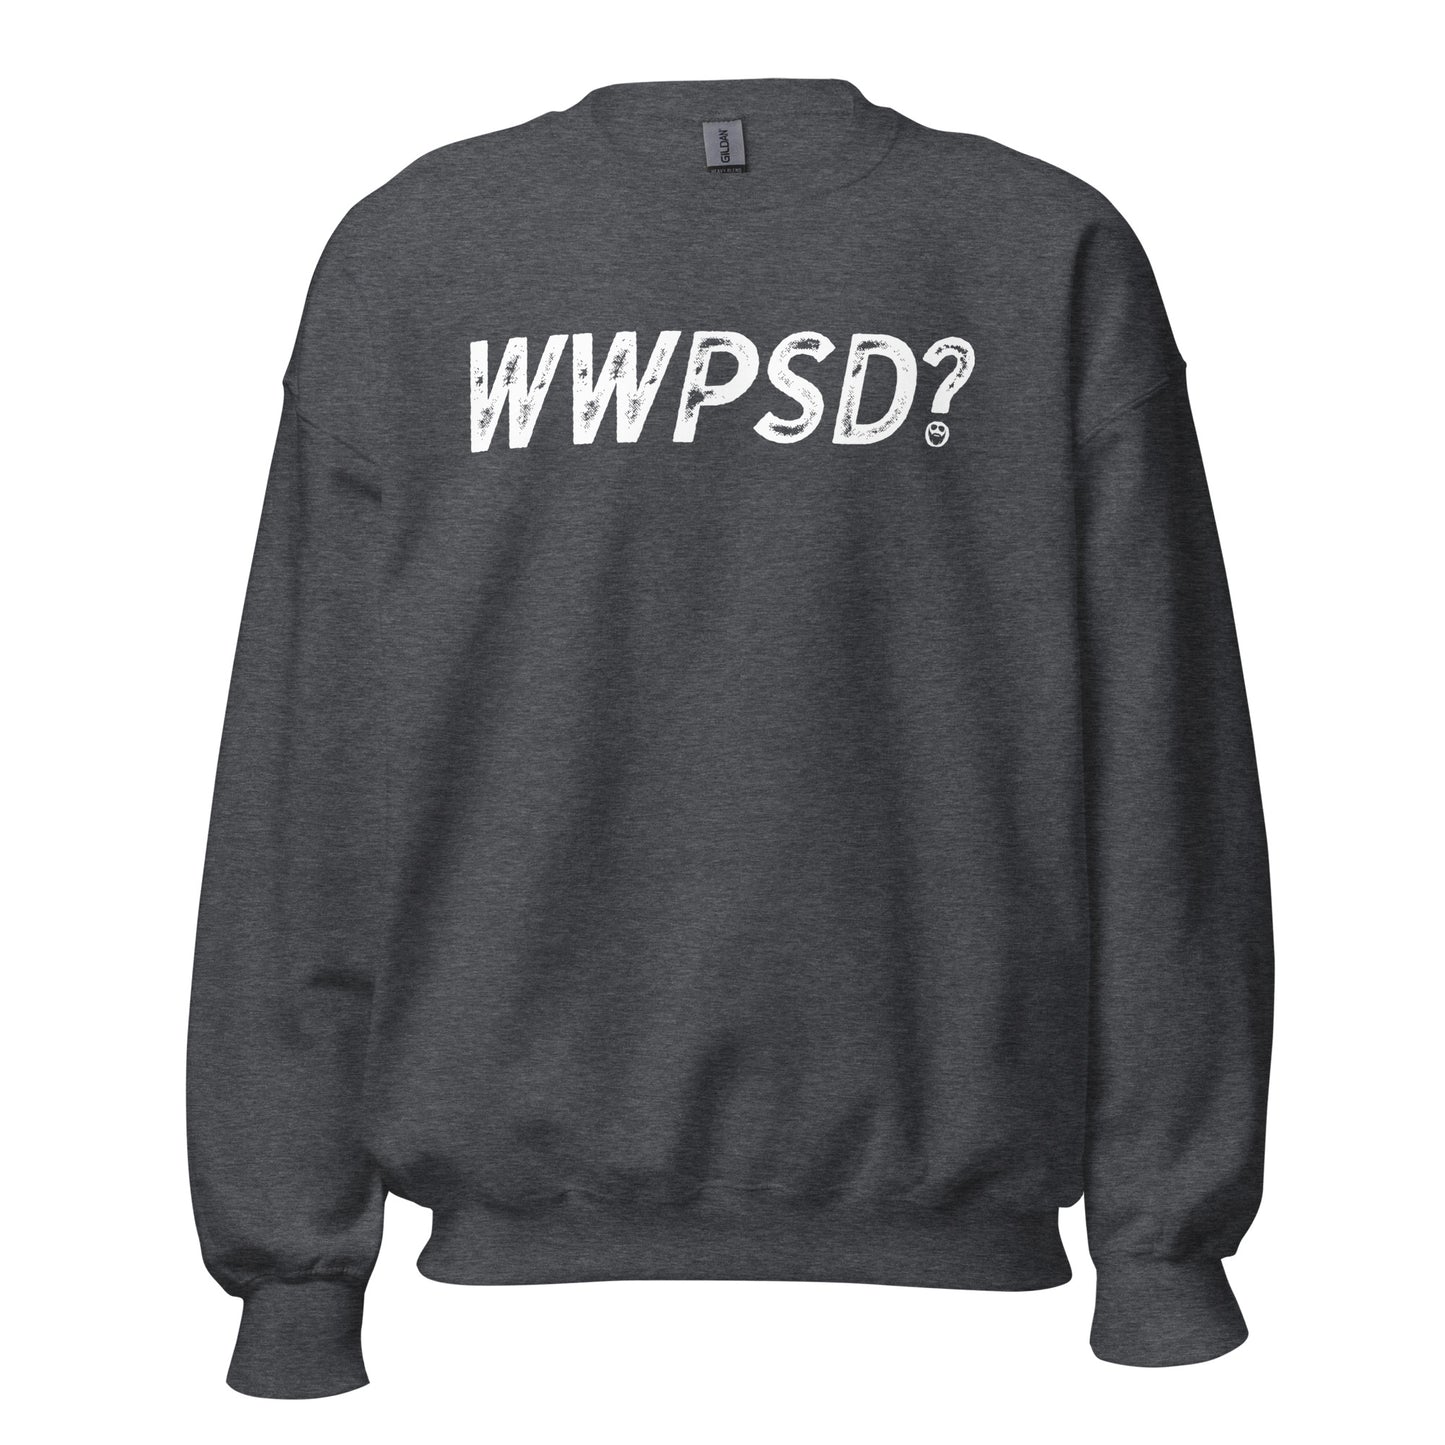 WWPSD? Sweatshirt